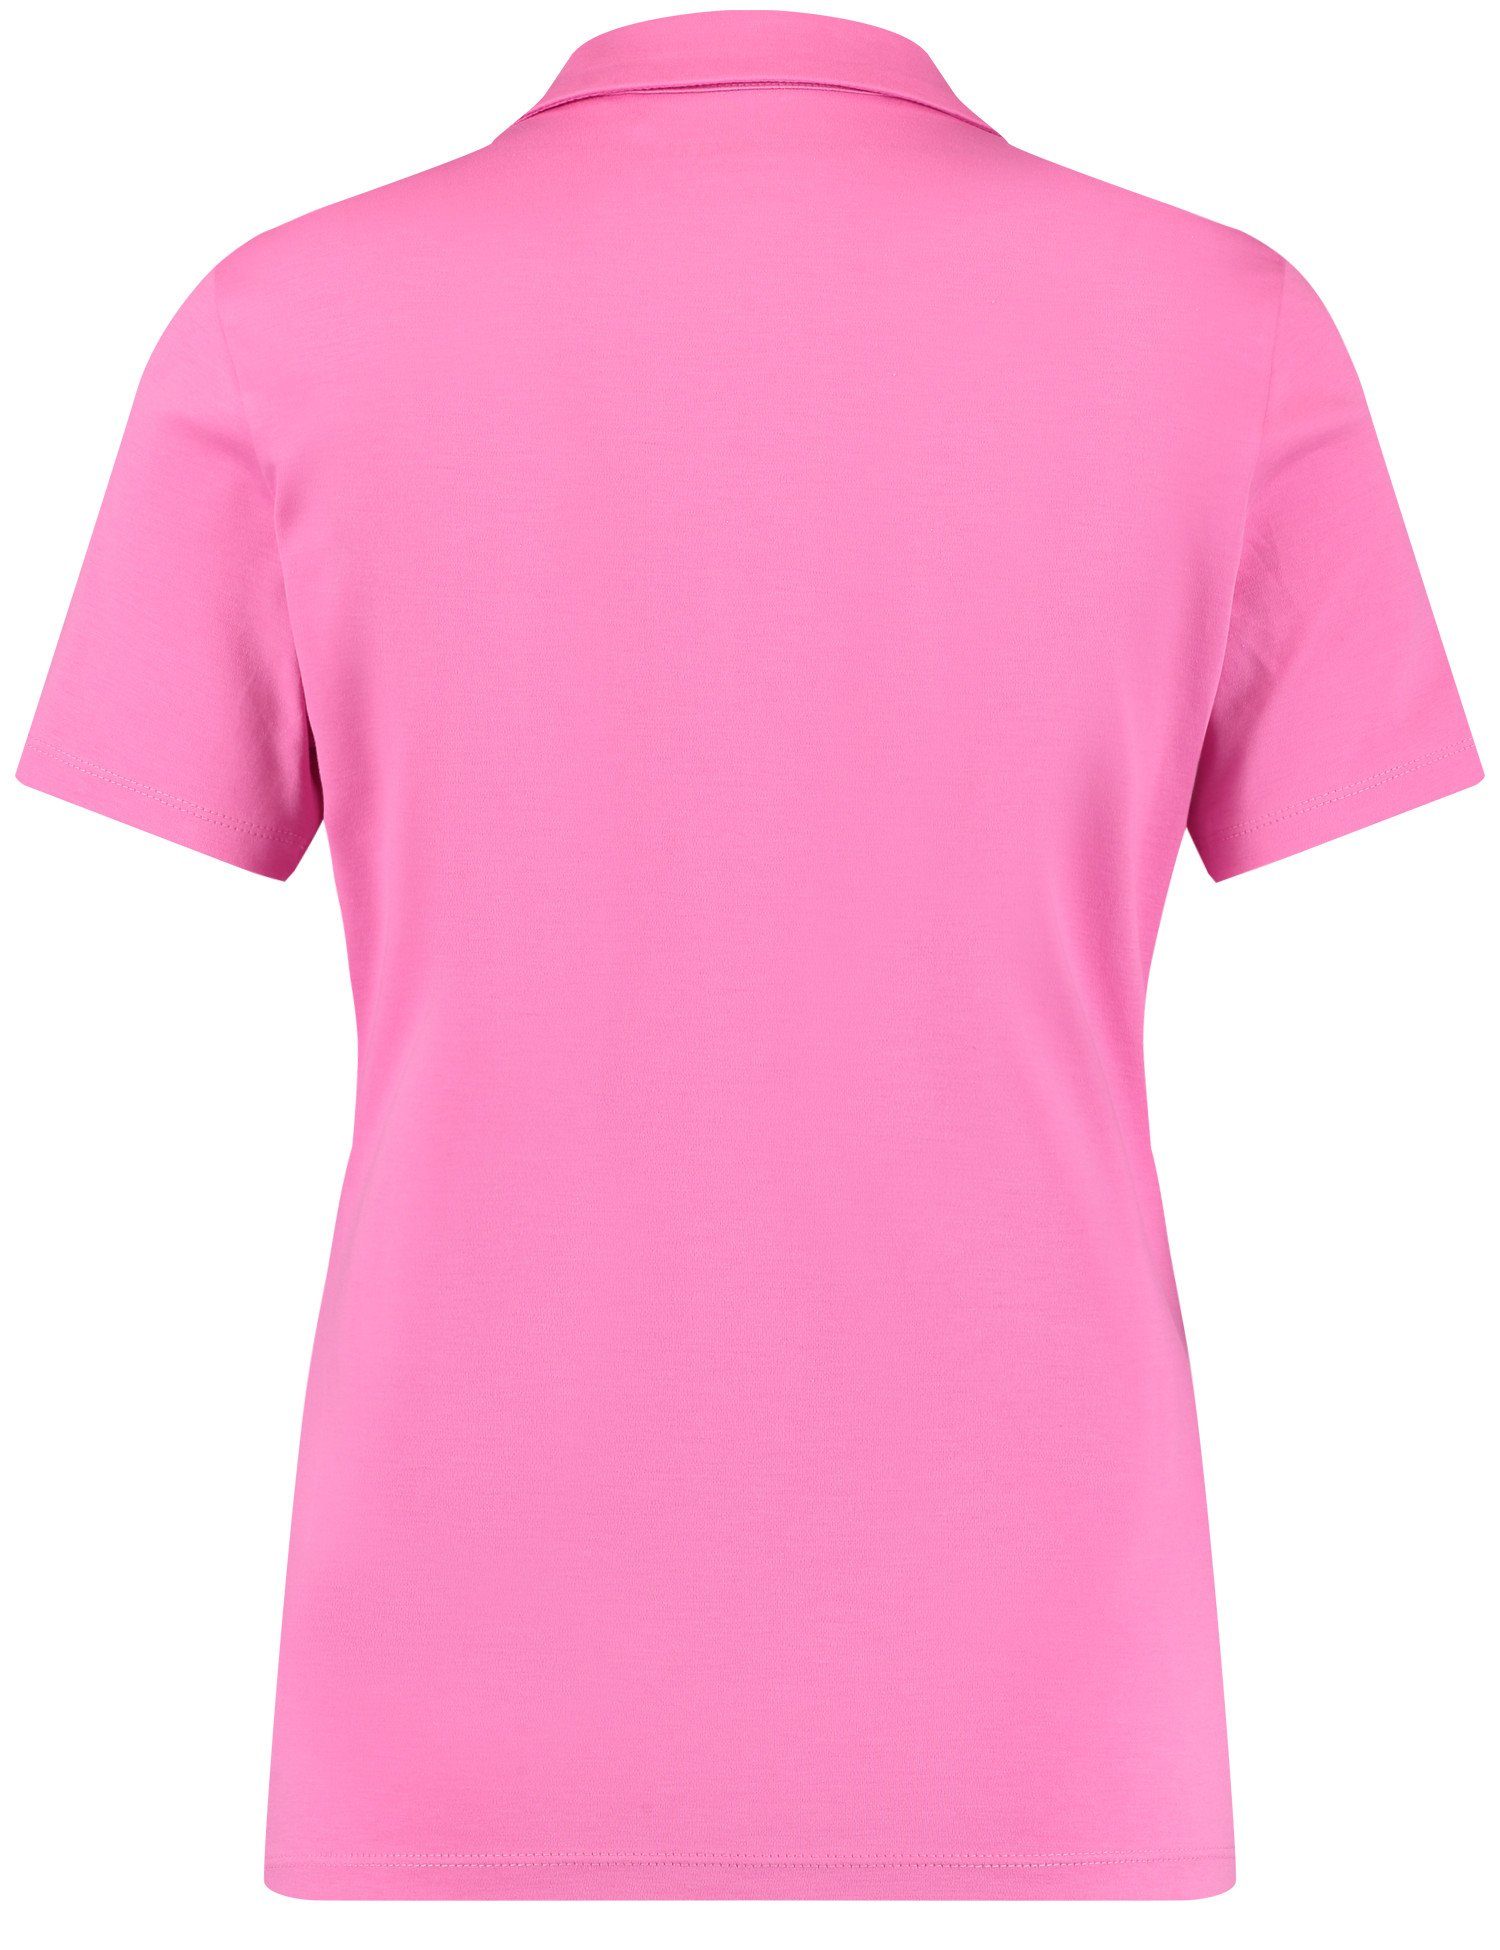 Poloshirt Pink WEBER GERRY Poloshirt Kurzarm Soft